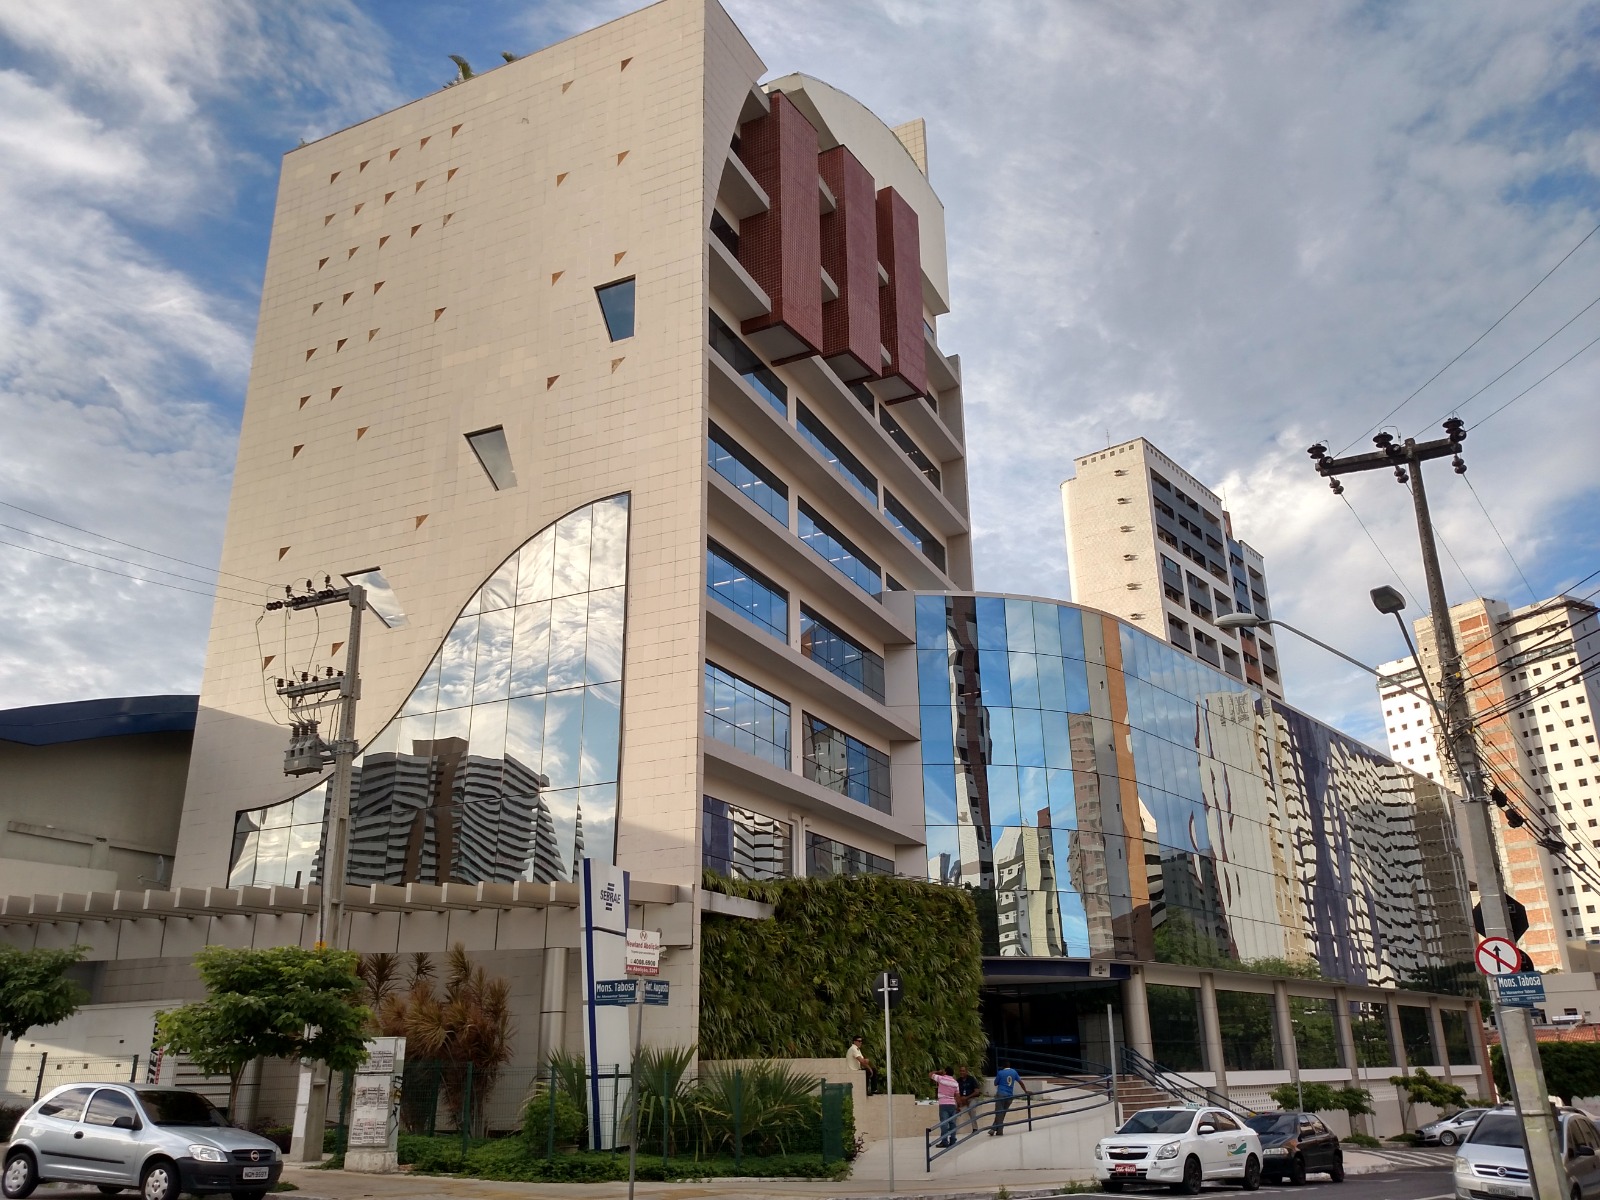 Conheça os novos prédios da Enel em São Paulo e no Rio de Janeiro - Enel:  inovação tecnológica e sustentabilidade ambiental